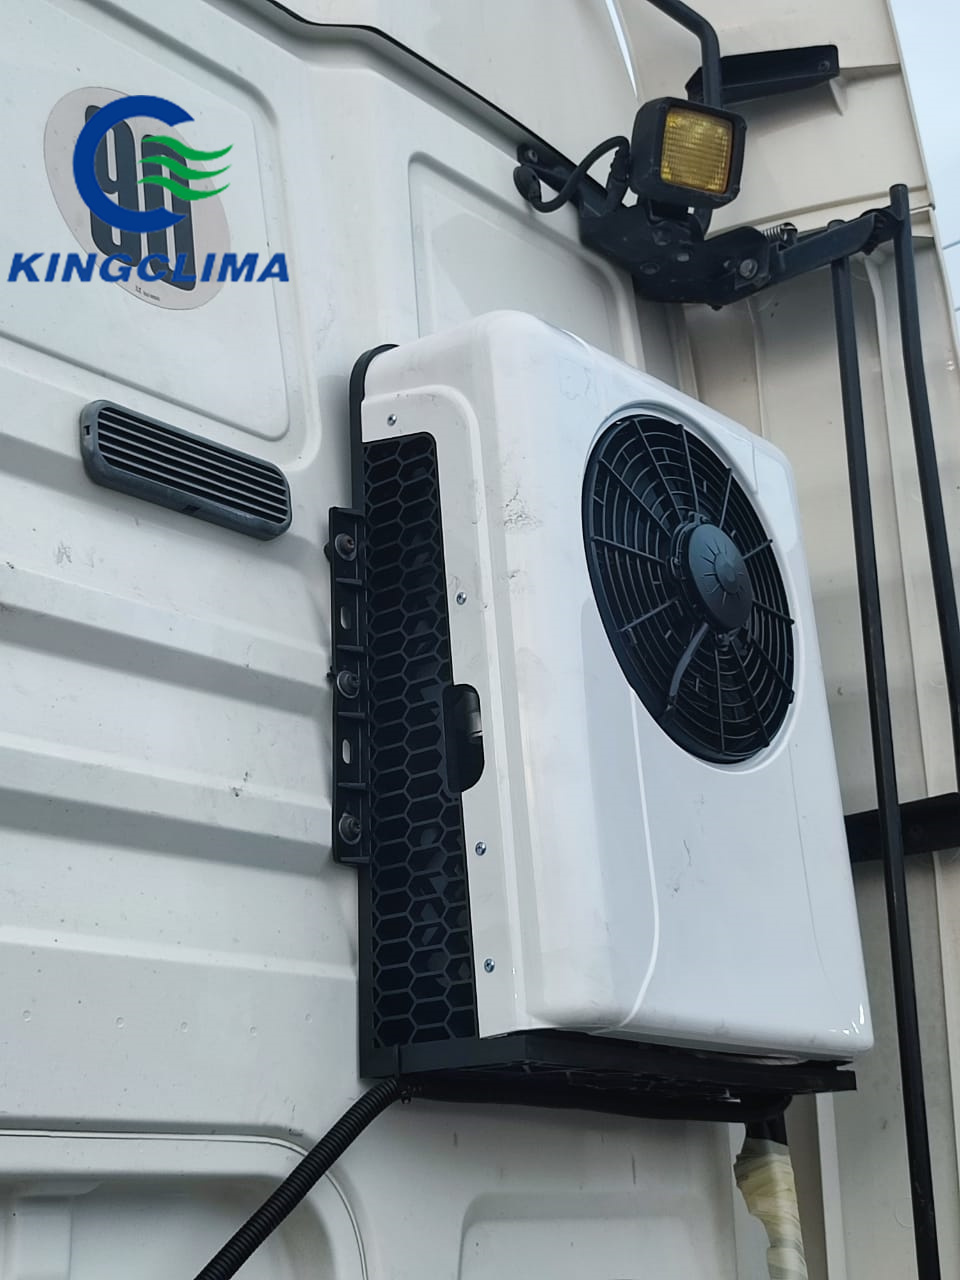 Vehicle Solar Cooling Caravan RV 12V Split Inverter Parking Cooler